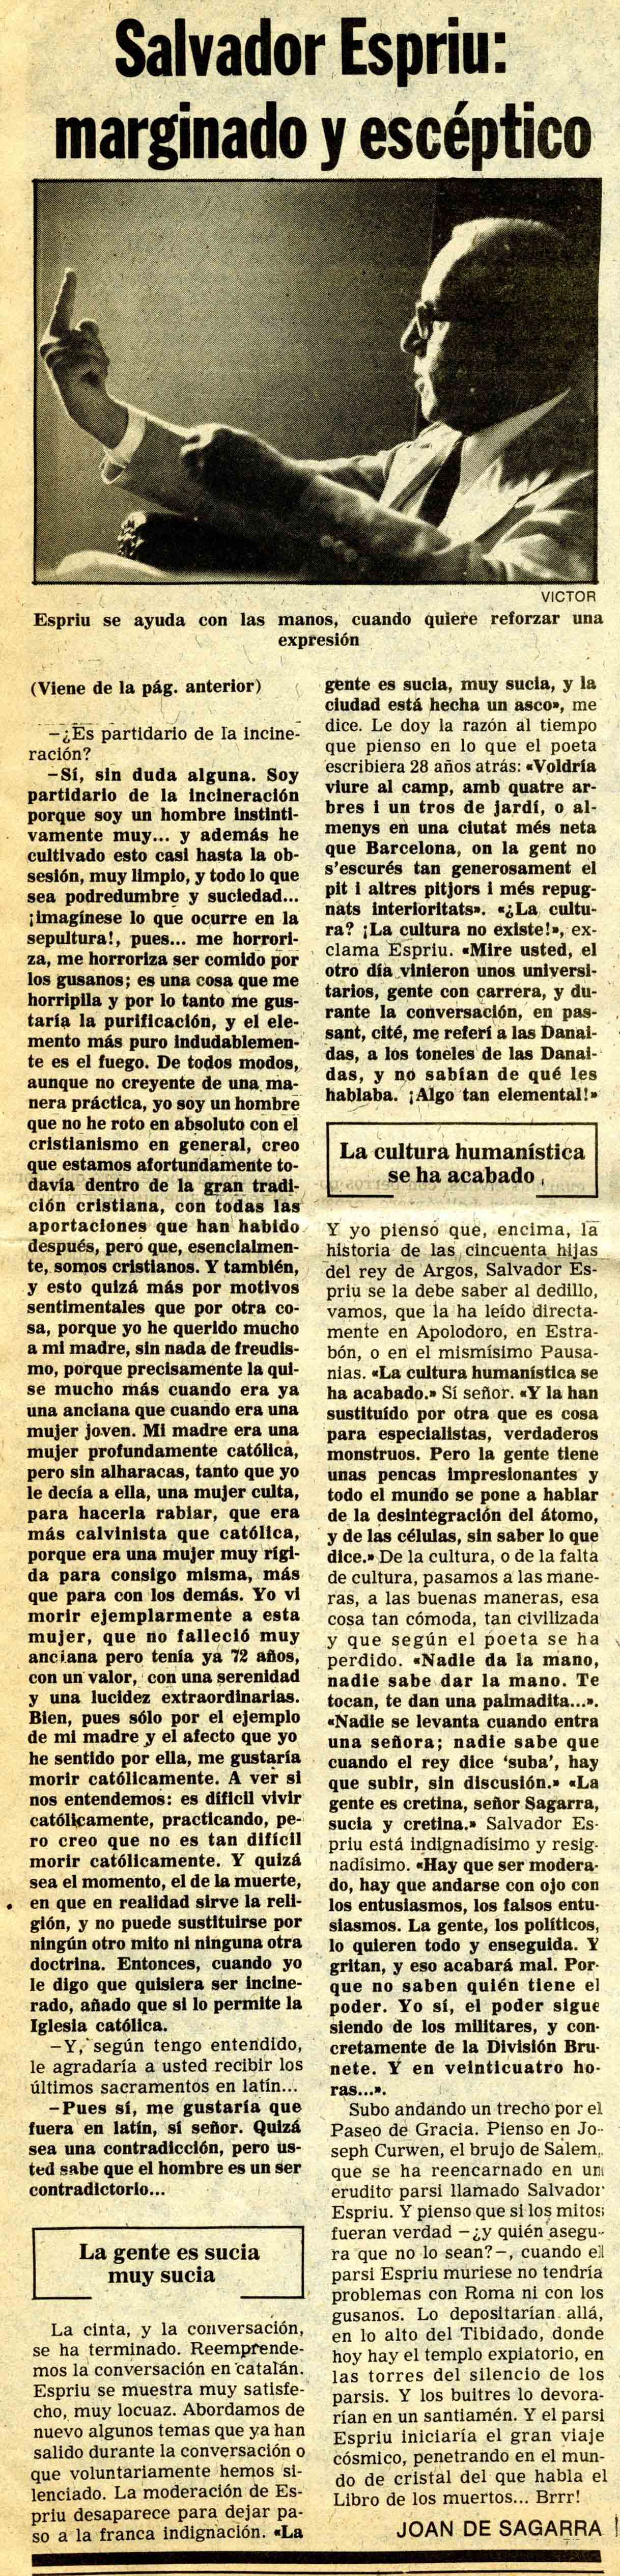 Segarra, Joan de. Salvador Espriu, marginado y escéptico. El Noticiero Universal, 07/10/1980